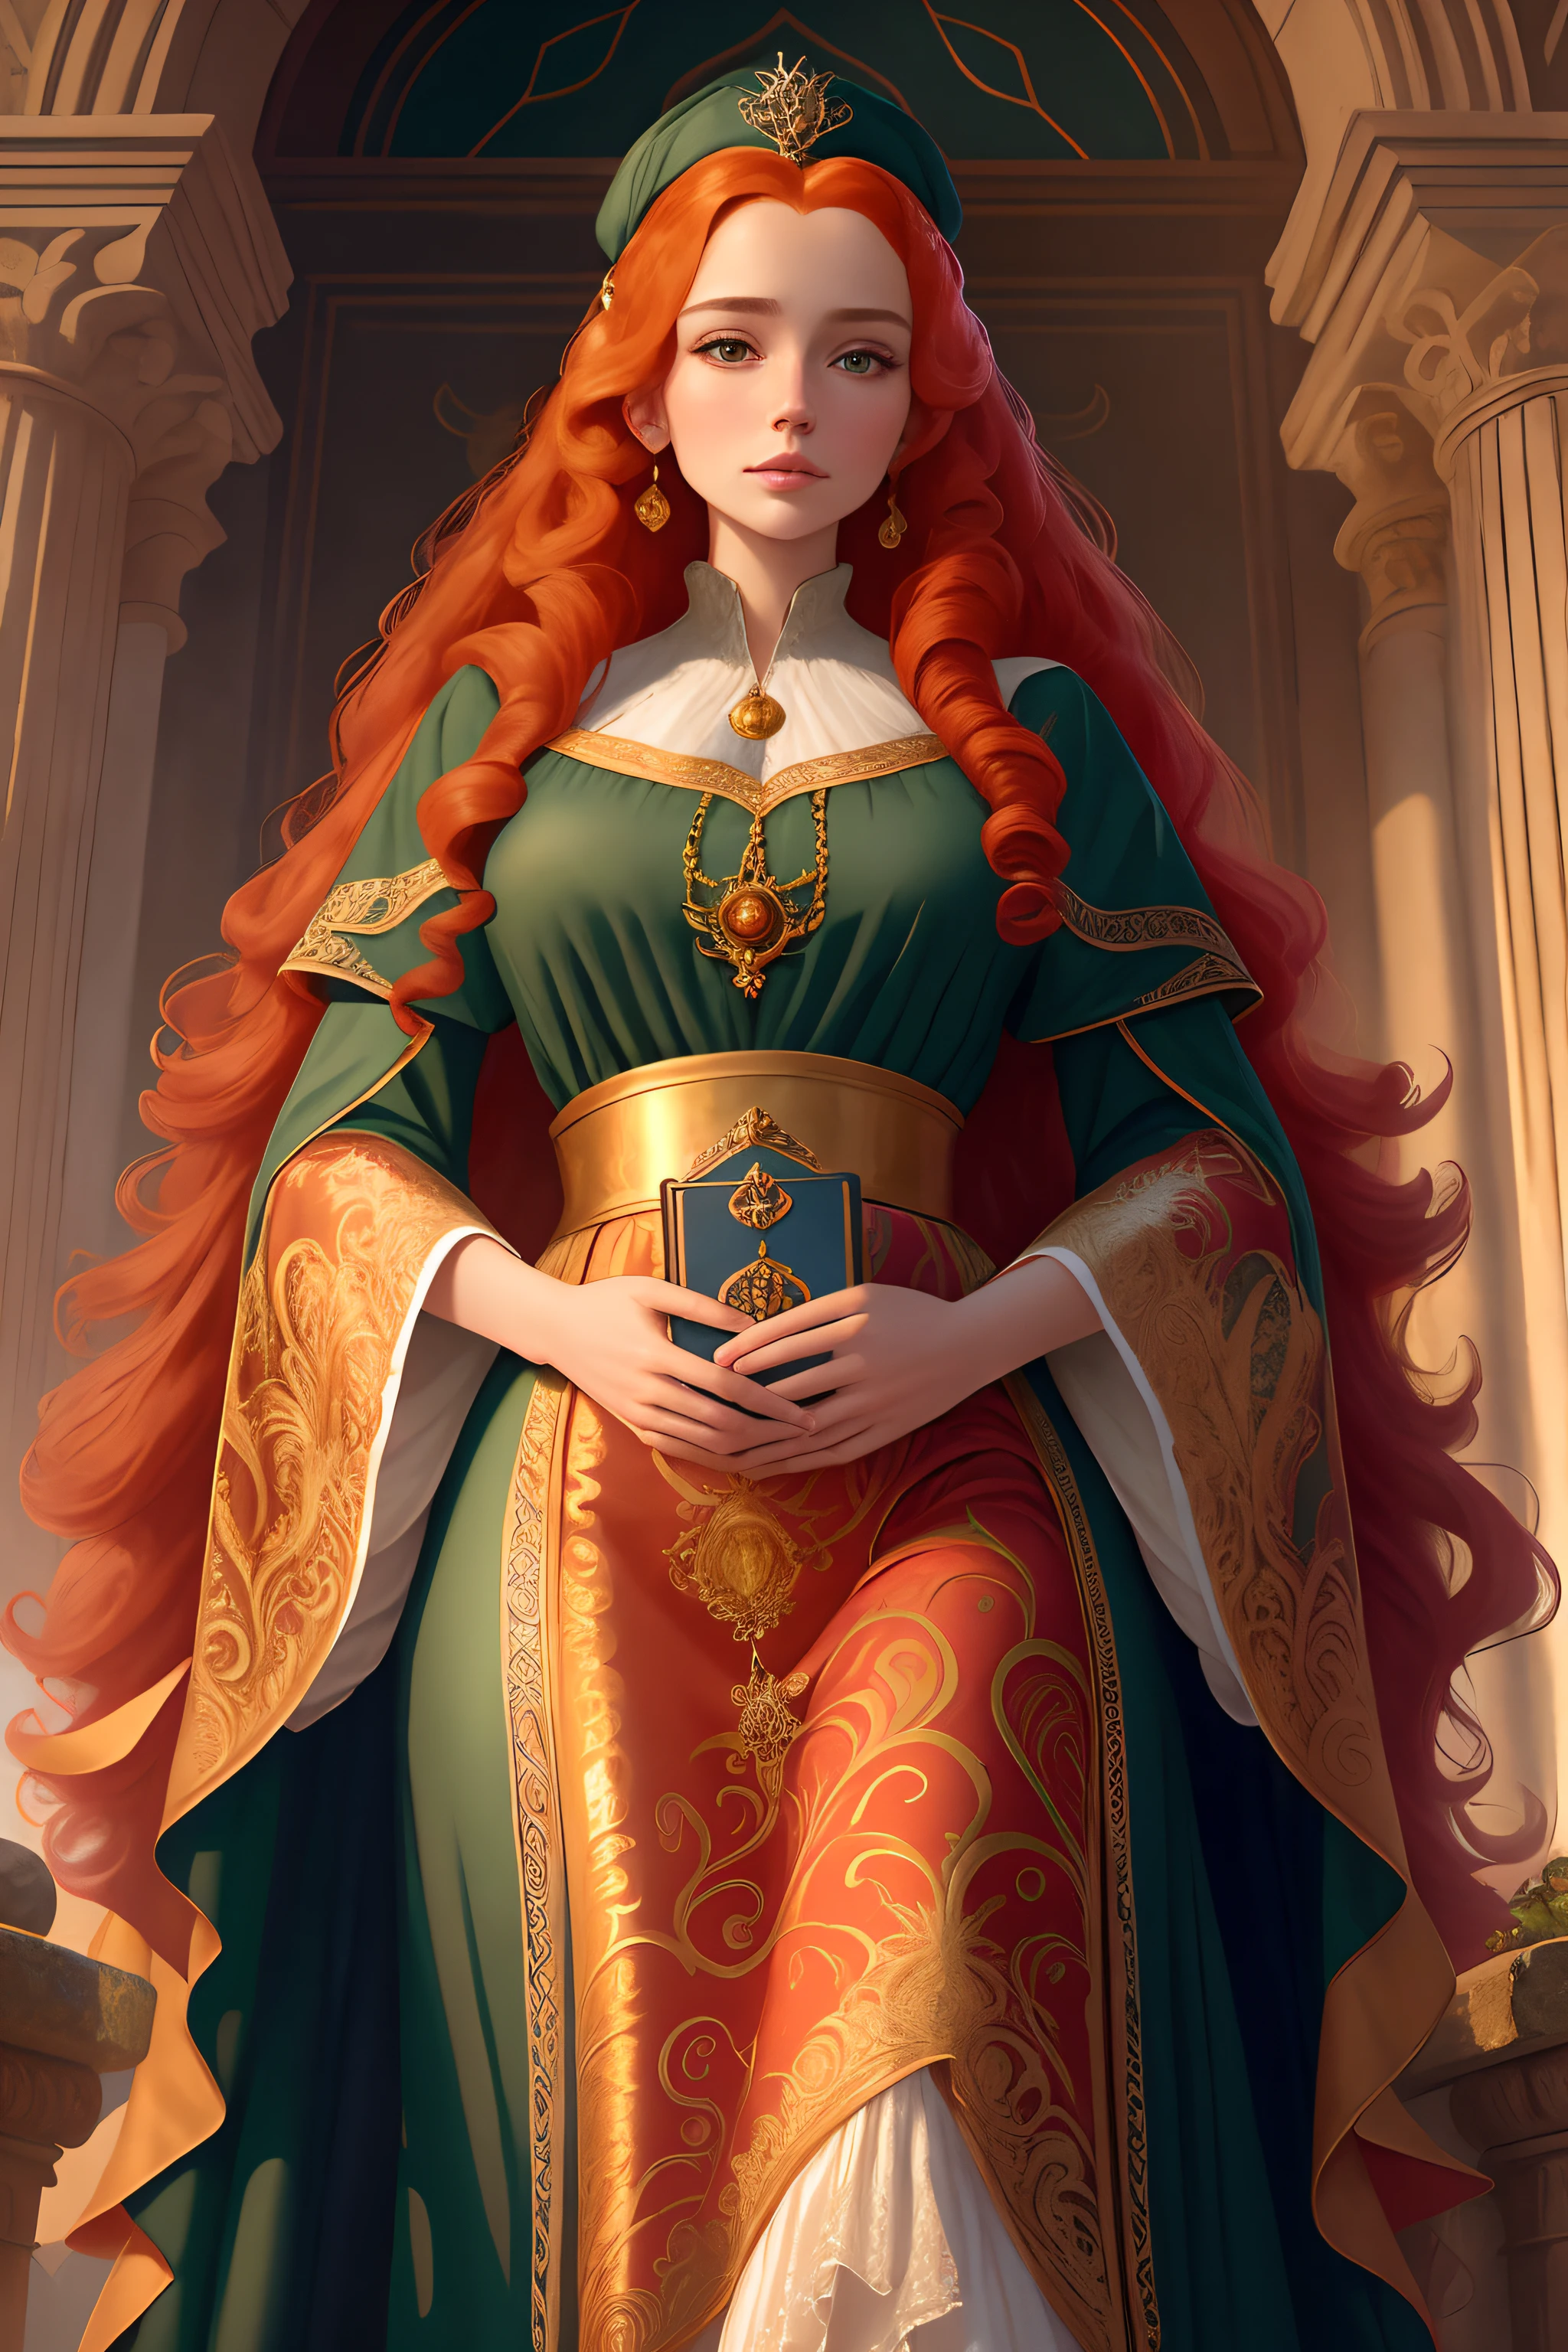 (愚蠢無人SD15:0.8) 中世紀肖像幻想 (版稅:1.1) 長的 [薑|金髮女郎] wavy hair princess glorious elaborate ornate royal emerald robes tiara gems standing in a 詳細的 luxurious stone castle Game of Thrones Hogwarts bright morning light from window, (傑作:1.2) (最好的品質) (詳細的) (錯綜複雜) (8K) (高動態範圍) (壁紙) (電影燈光) (銳利的焦點)